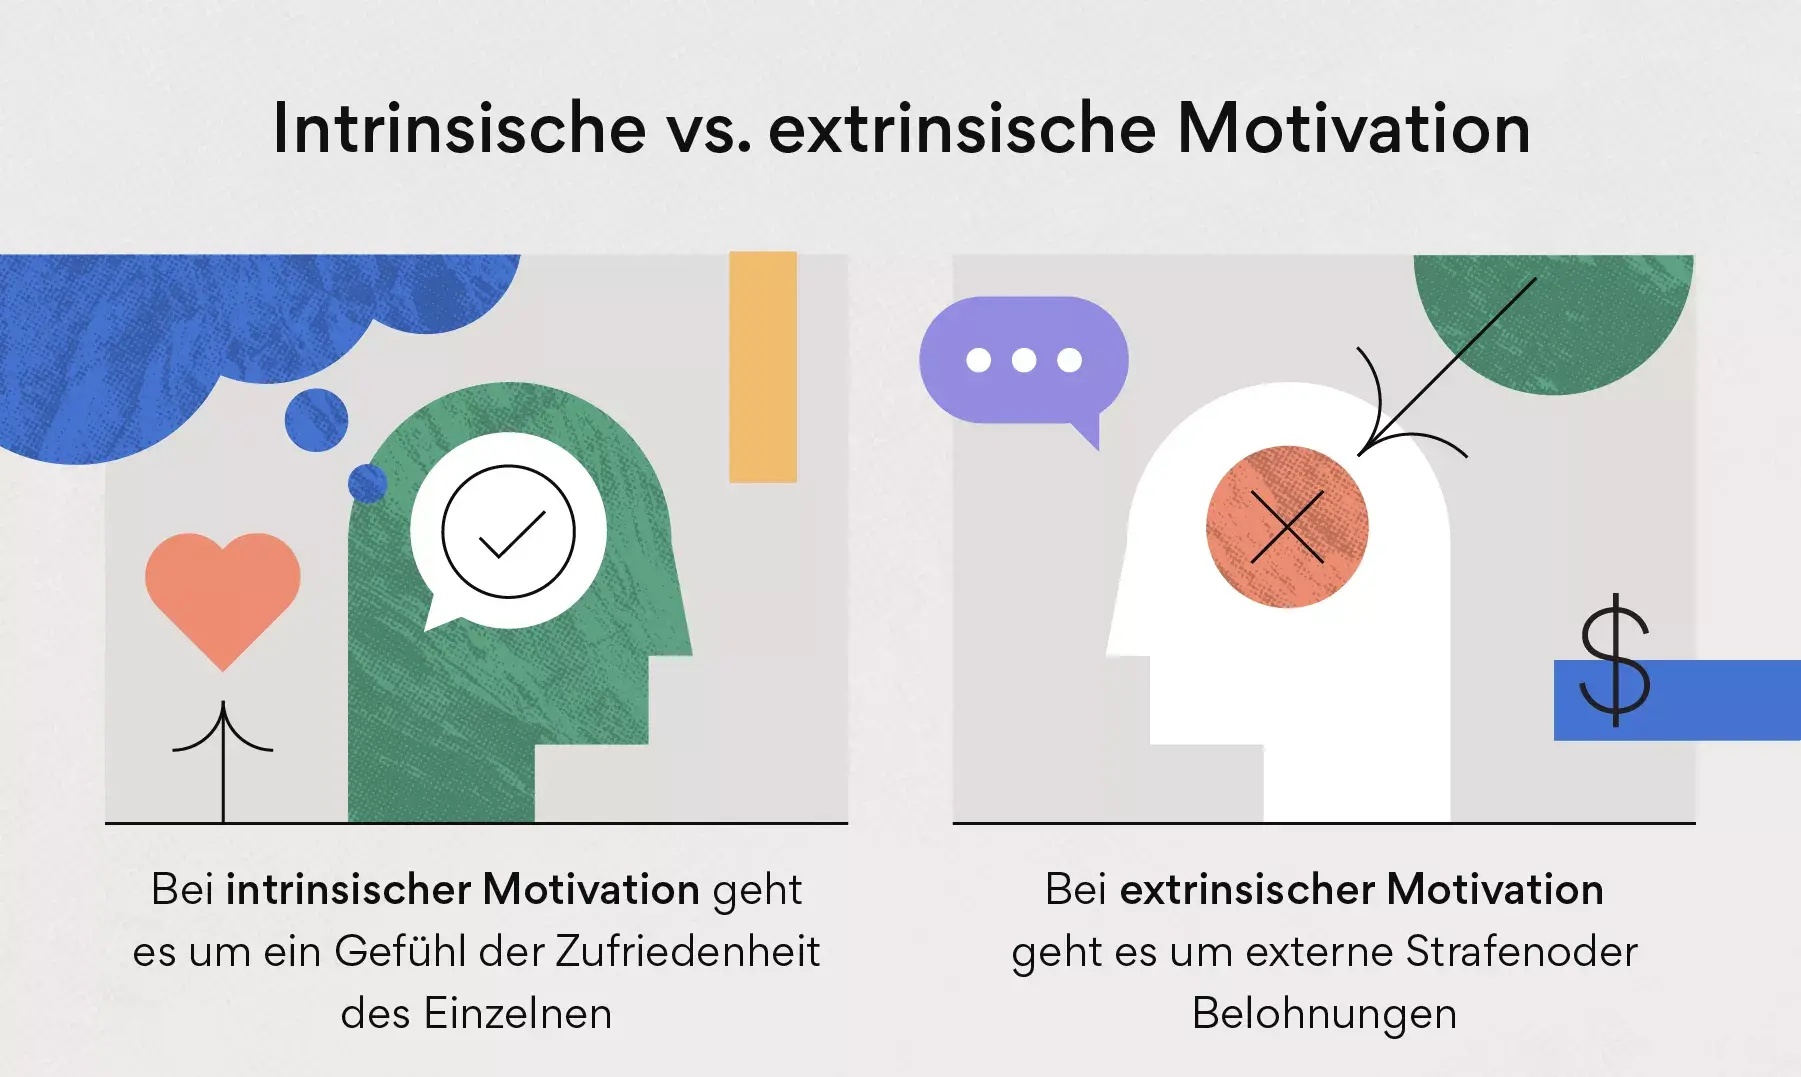 Intrinsische Motivation vs. extrinsische Motivation